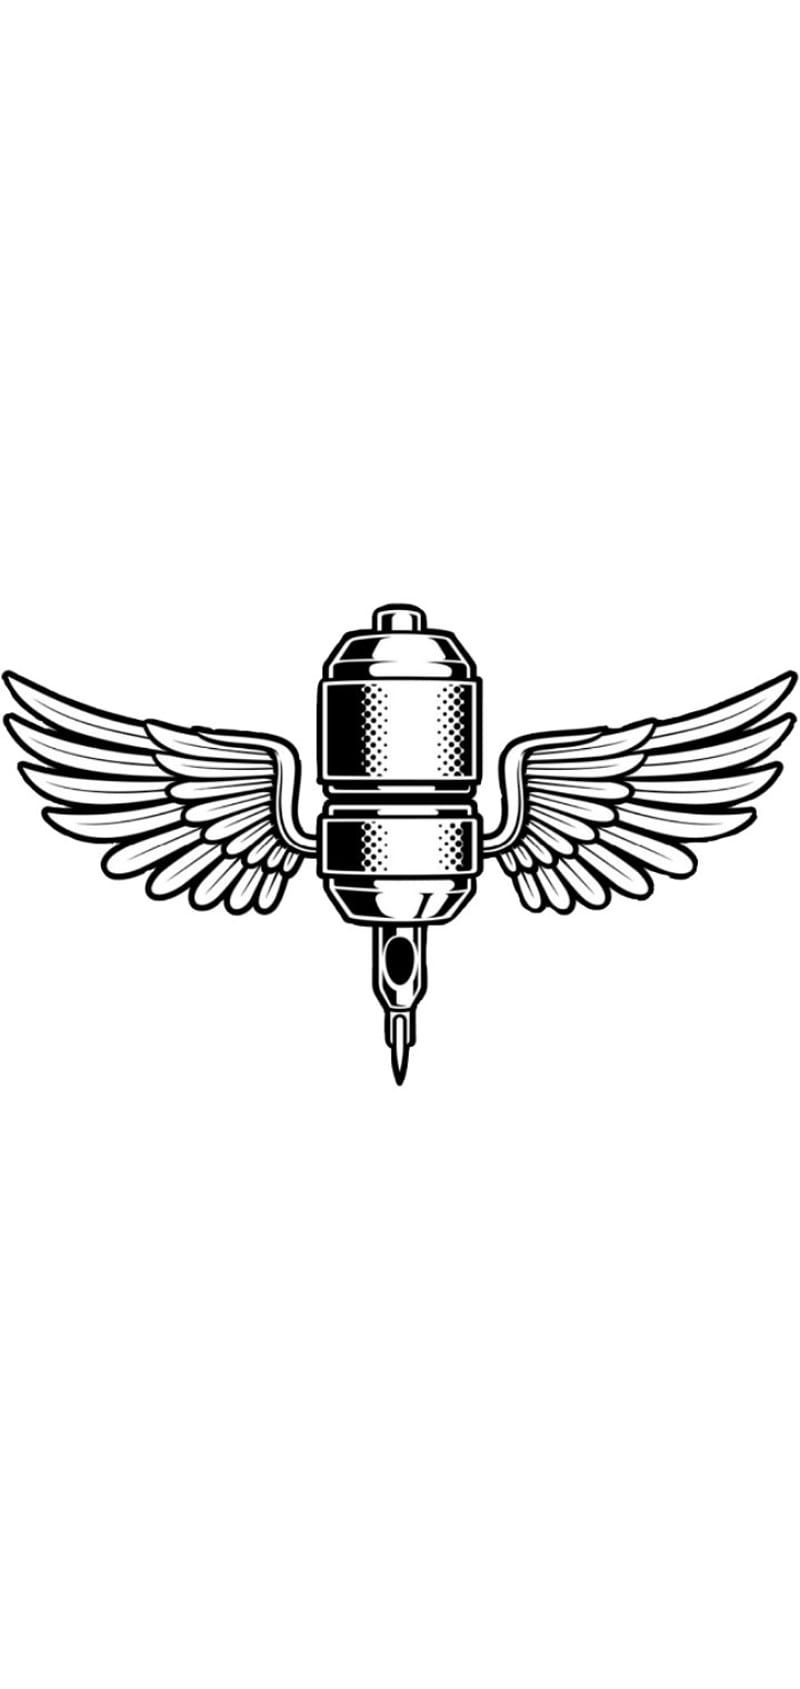 90 Pilot Wings Tattoo Illustrations RoyaltyFree Vector Graphics  Clip  Art  iStock